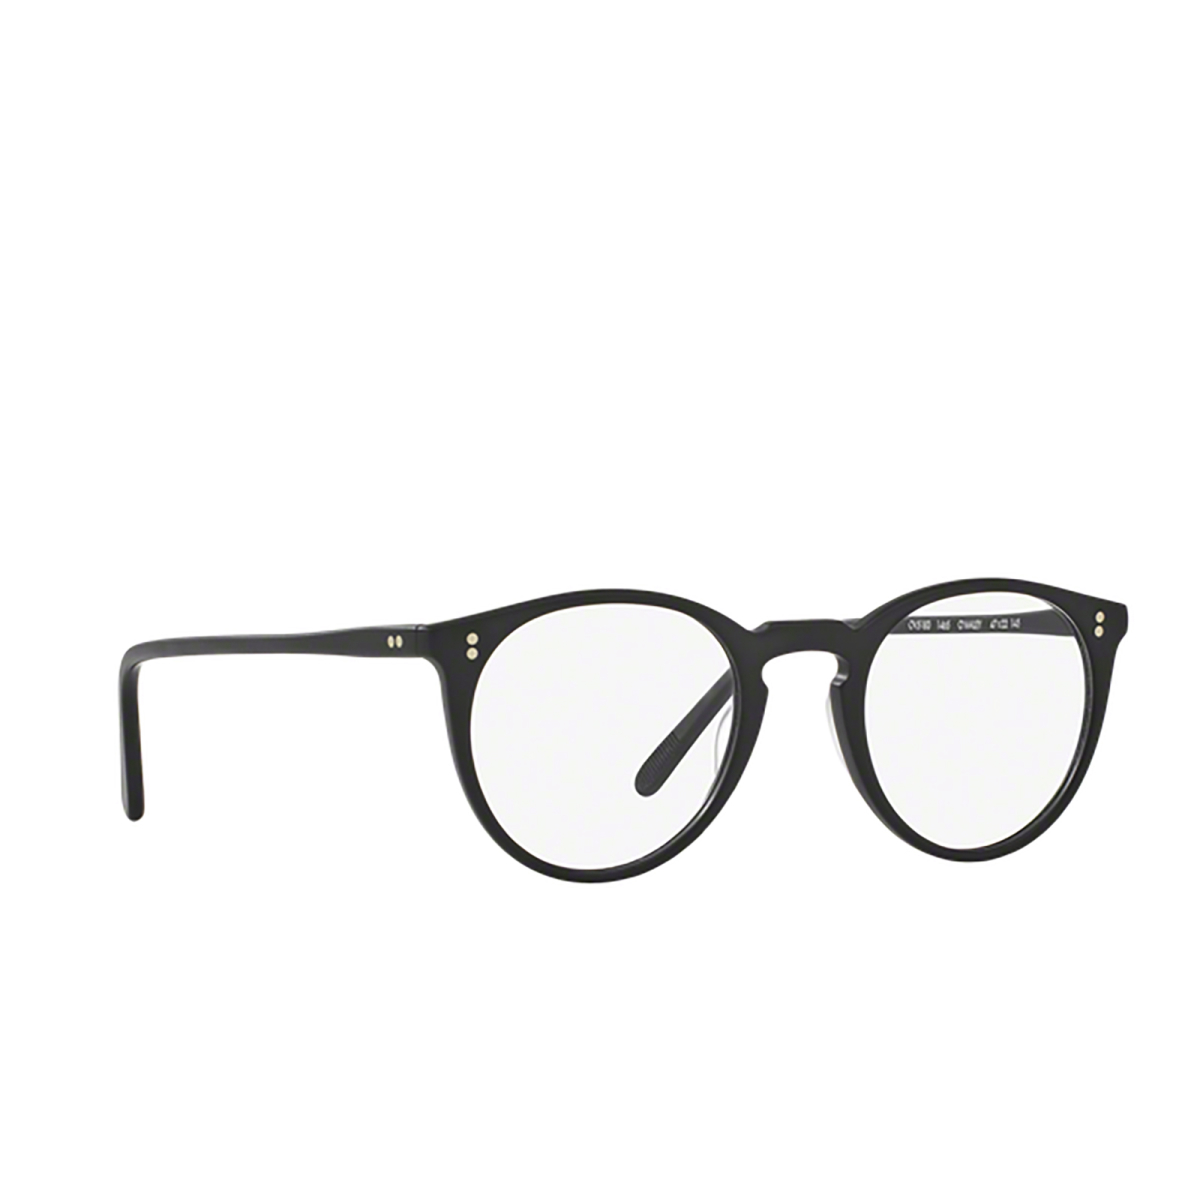 Oliver Peoples® Round Eyeglasses: O'malley OV5183 color Black Semi Matte 1465 - 2/3.